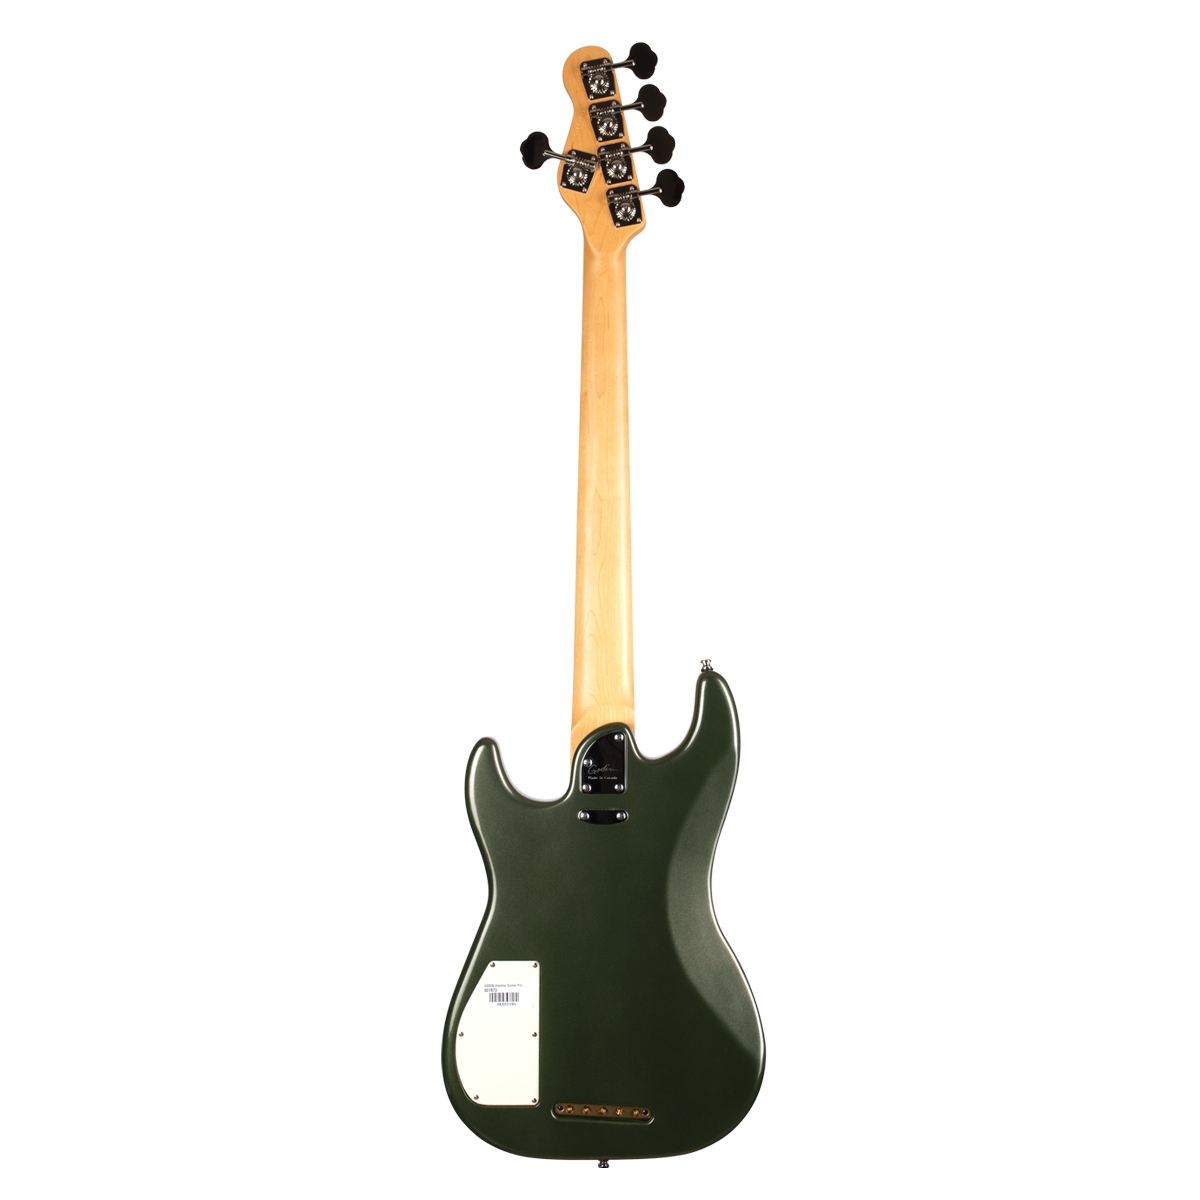 Godin Shifter 5 Bas Gitar (Desert Green)